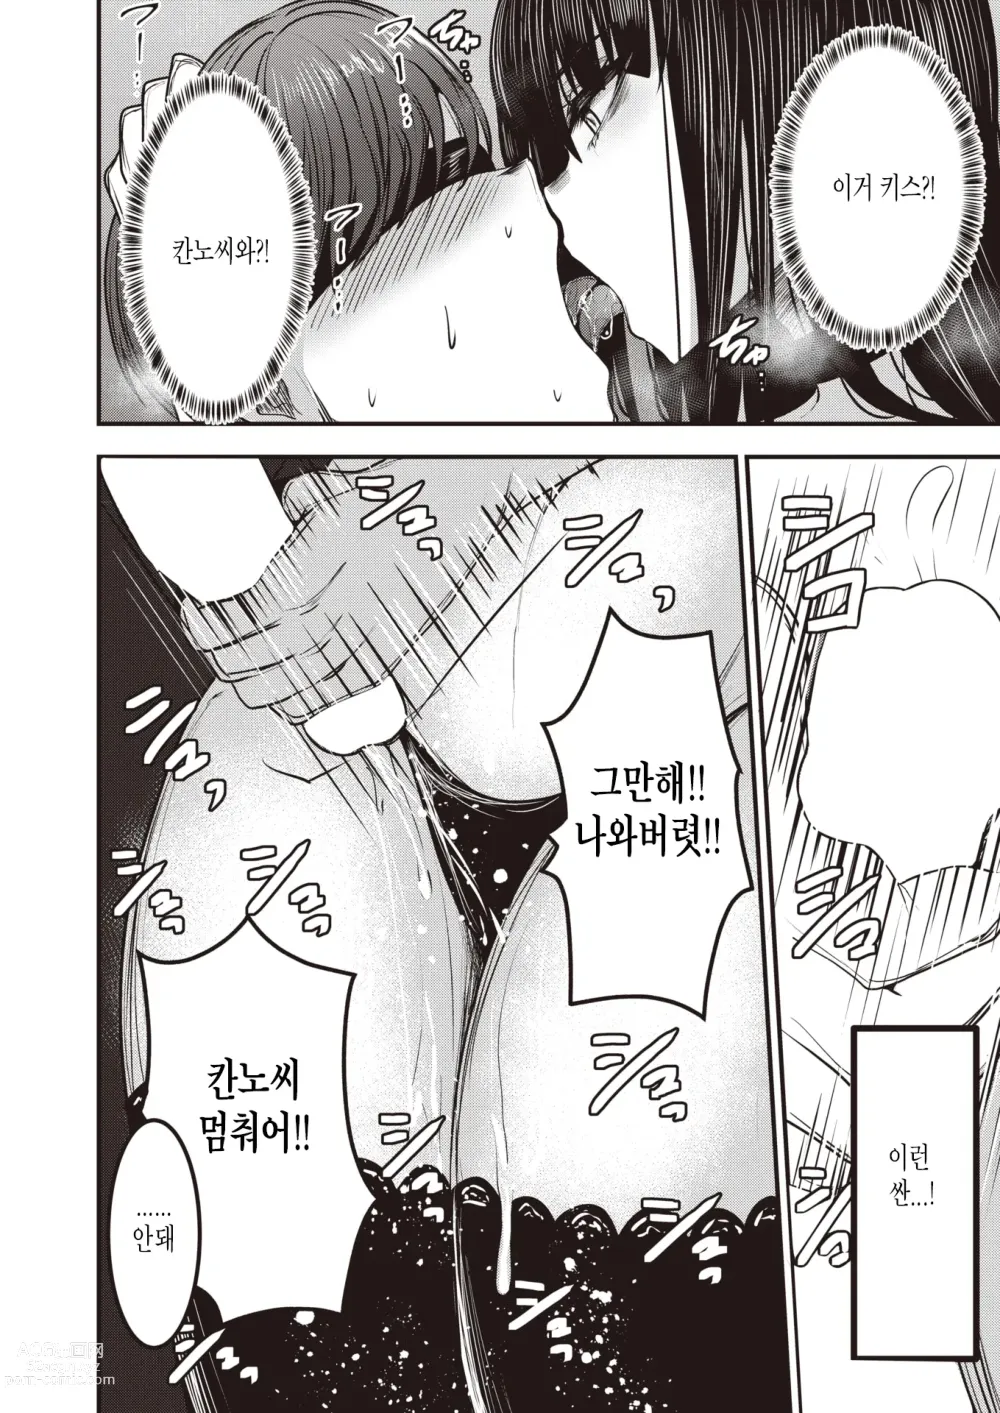 Page 4 of manga Kannou-san wa Sagashiteru.